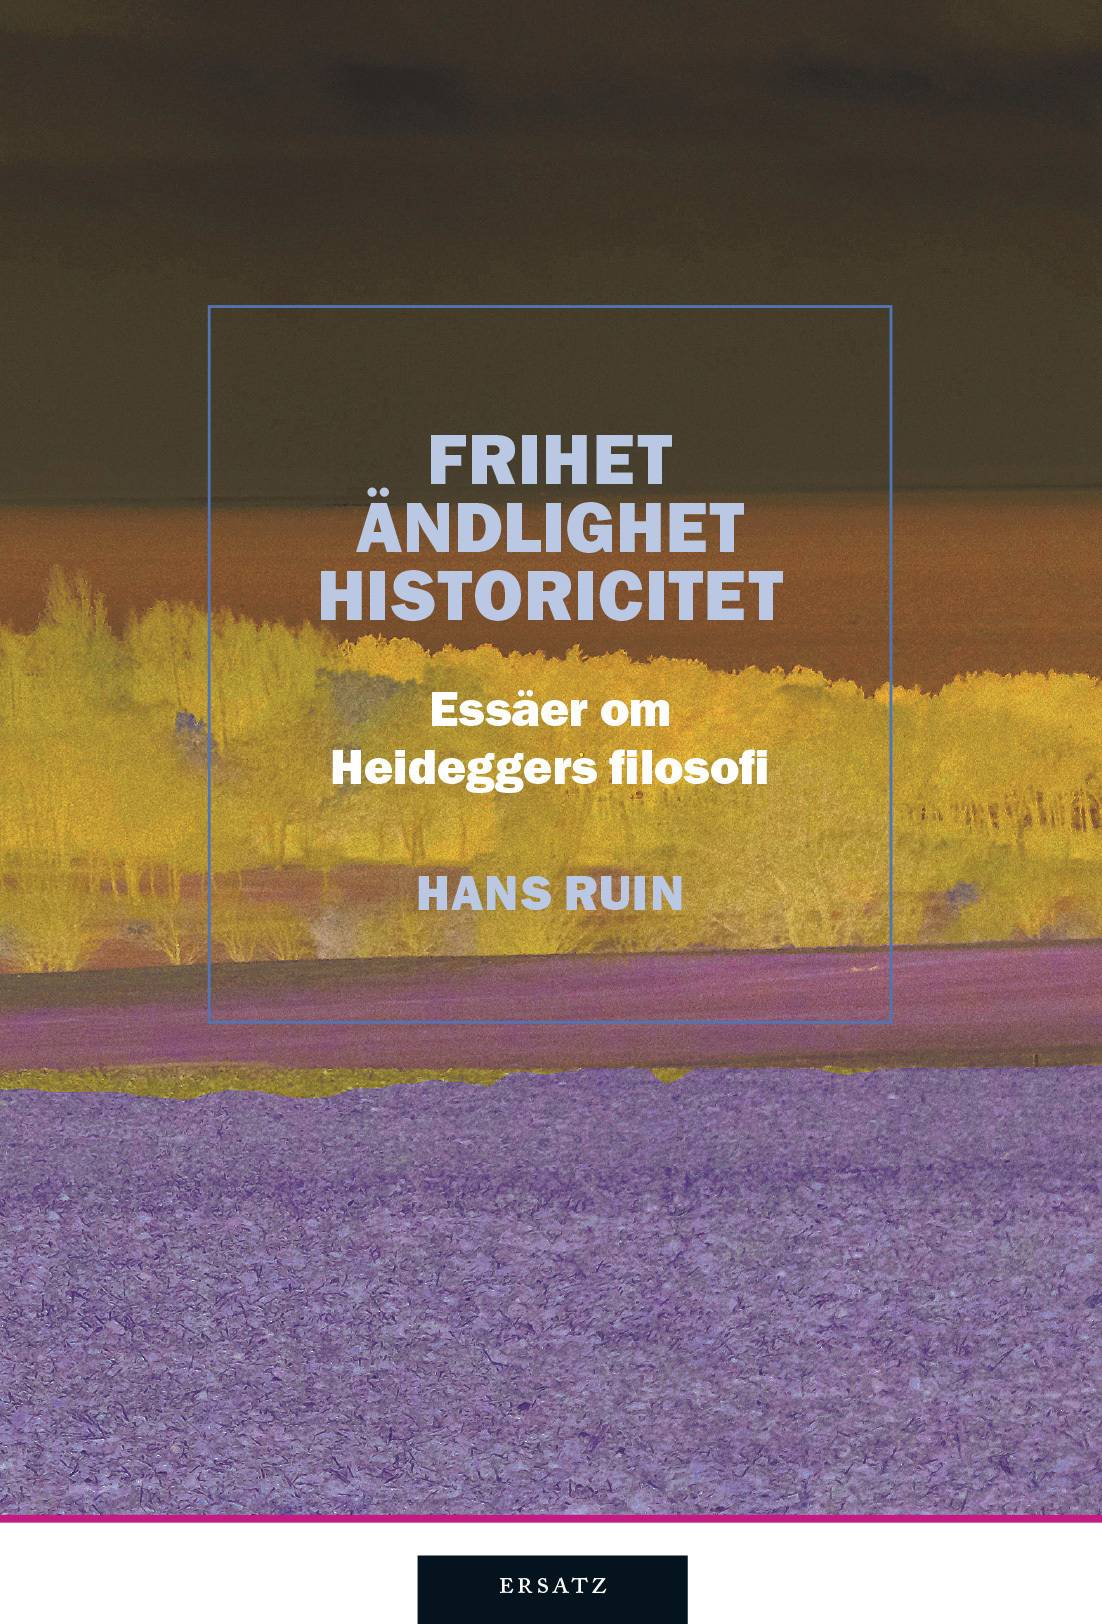 Frihet, ändlighet, historicitet : essäer om Heideggers filosofi